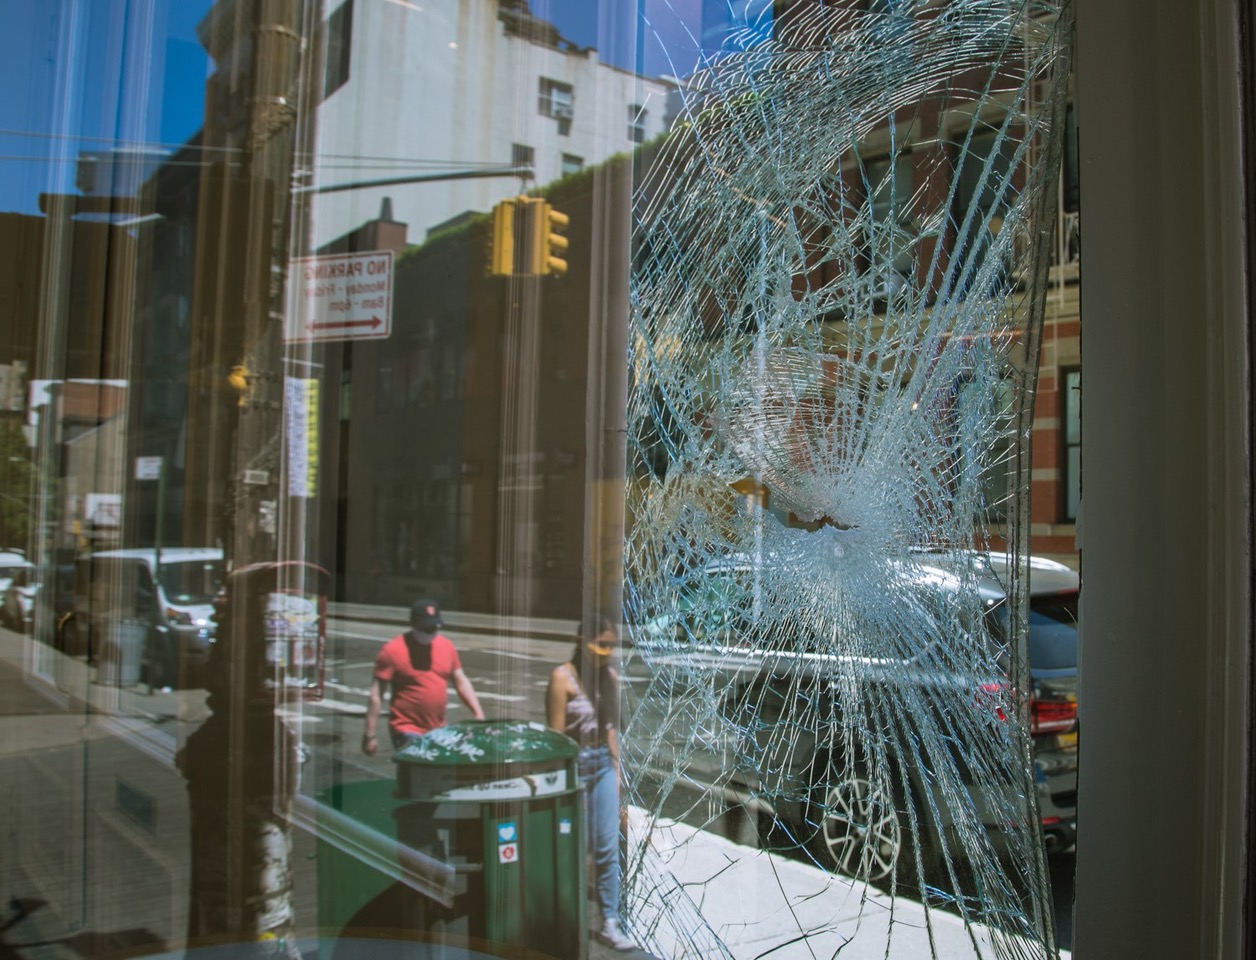 Những cửa hàng chịu ảnh hưởng nặng nề vì bạo động.